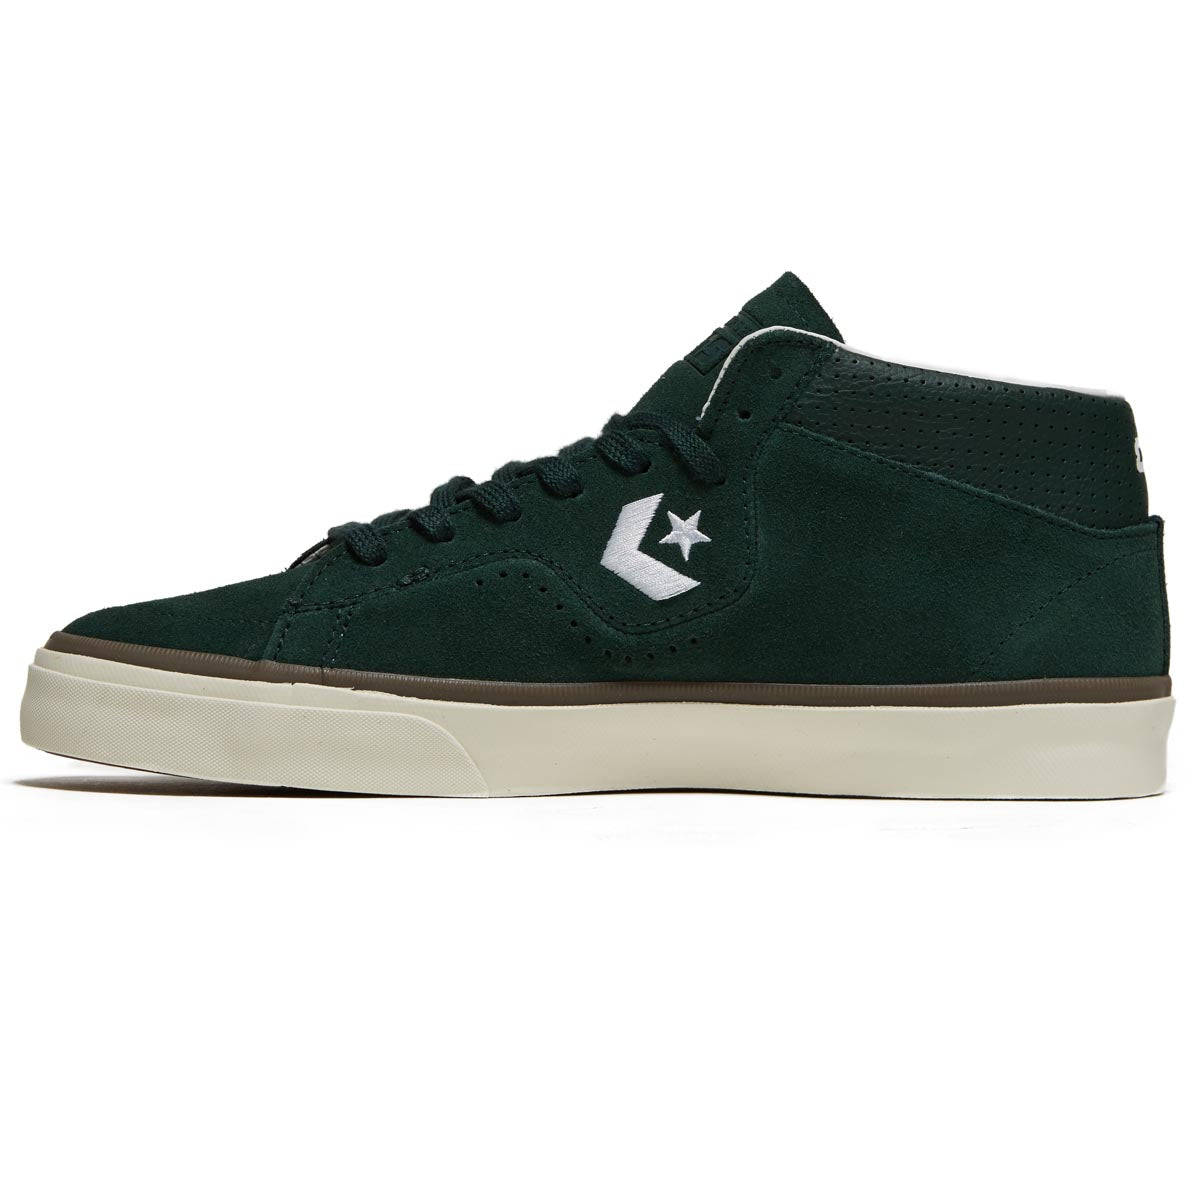 Converse Louie Lopez Pro Mid Shoes - Deep Emerald/White/Egret image 2